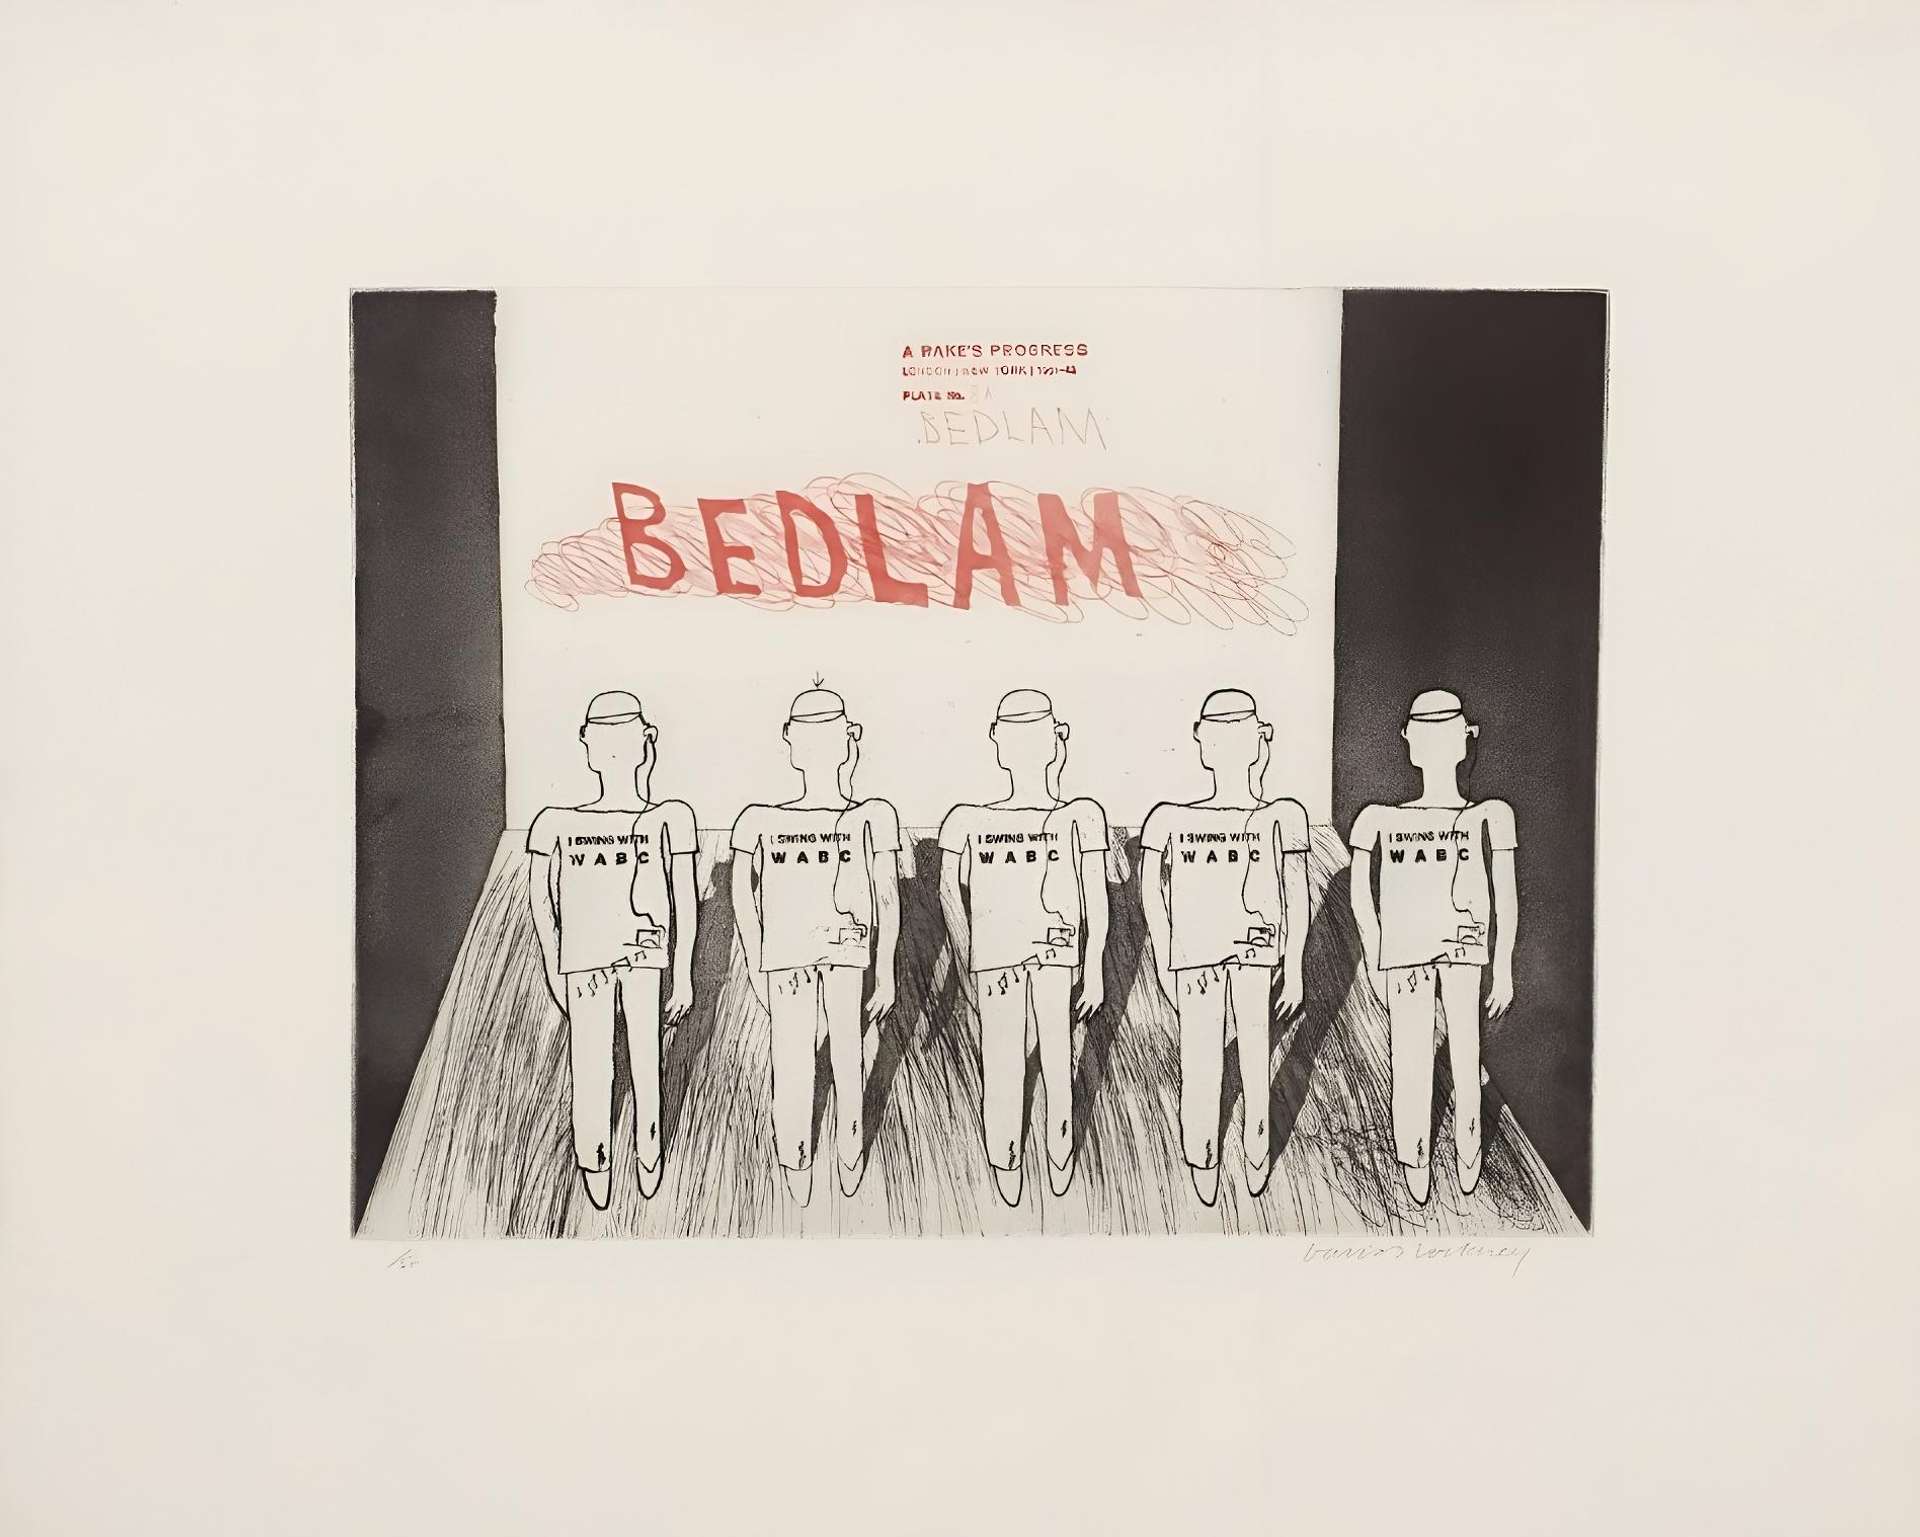 Bedlam - Signed Print by David Hockney 1963 - MyArtBroker